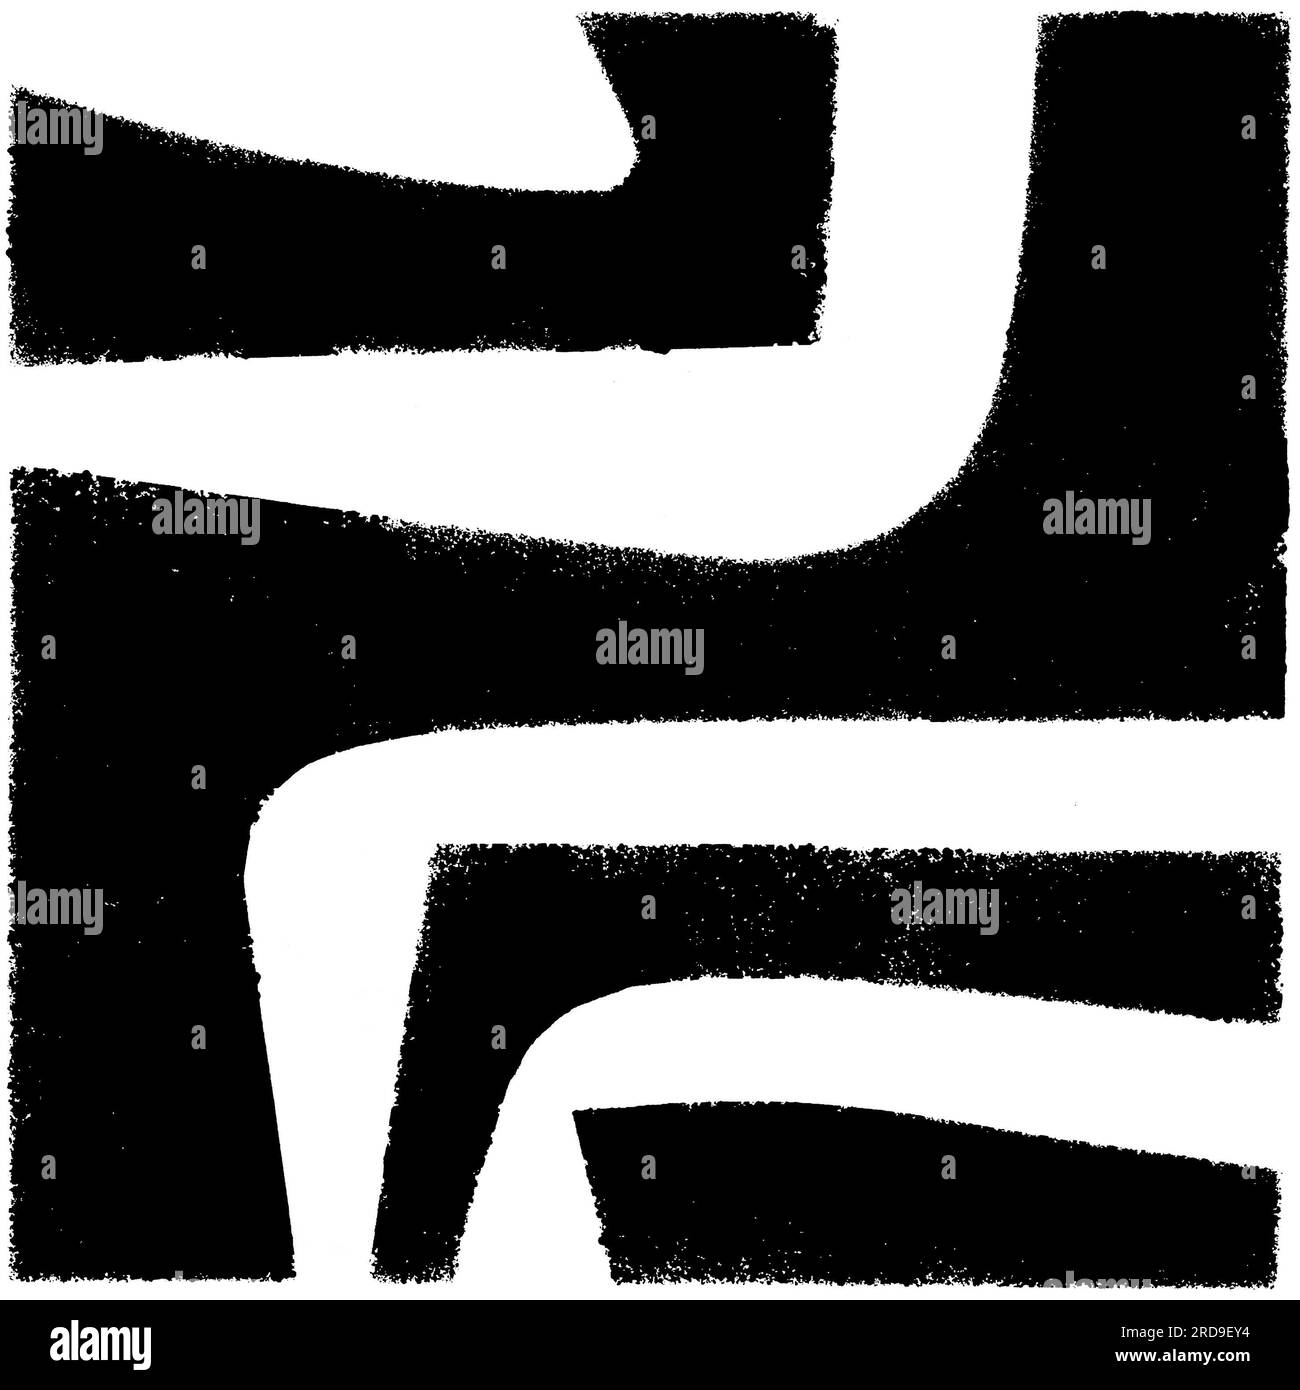 Originale handgefertigte Texturschablone mit abstrakten Motiven in Schwarz und Weiß Stockfoto